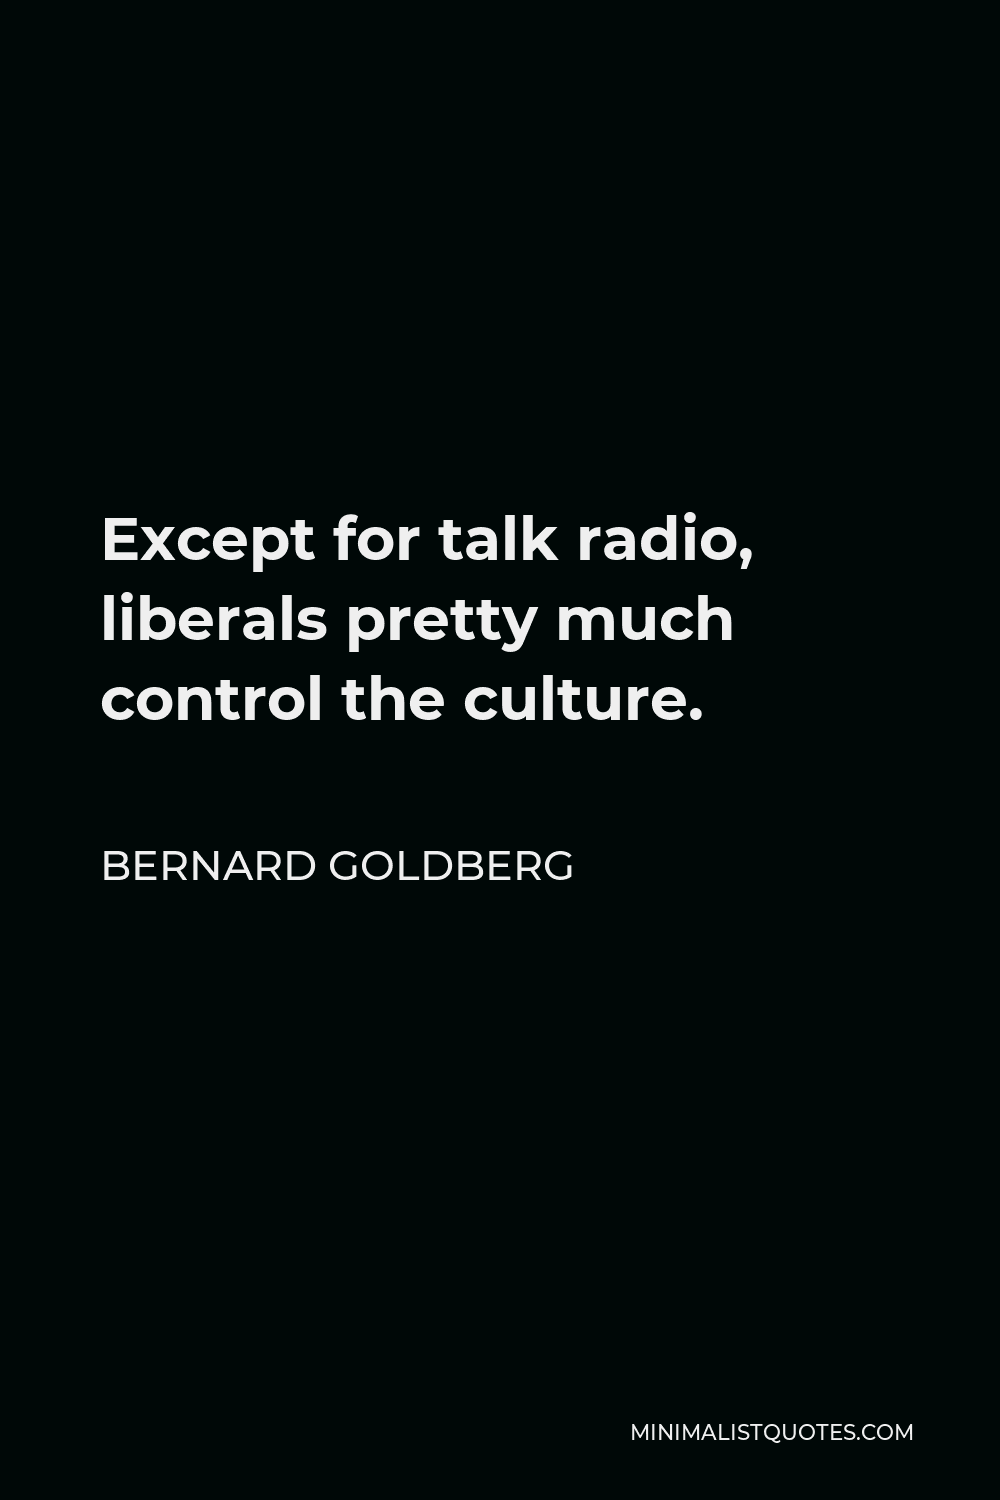 Bernard Goldberg Quote - Except for talk radio, liberals pretty much control the culture.